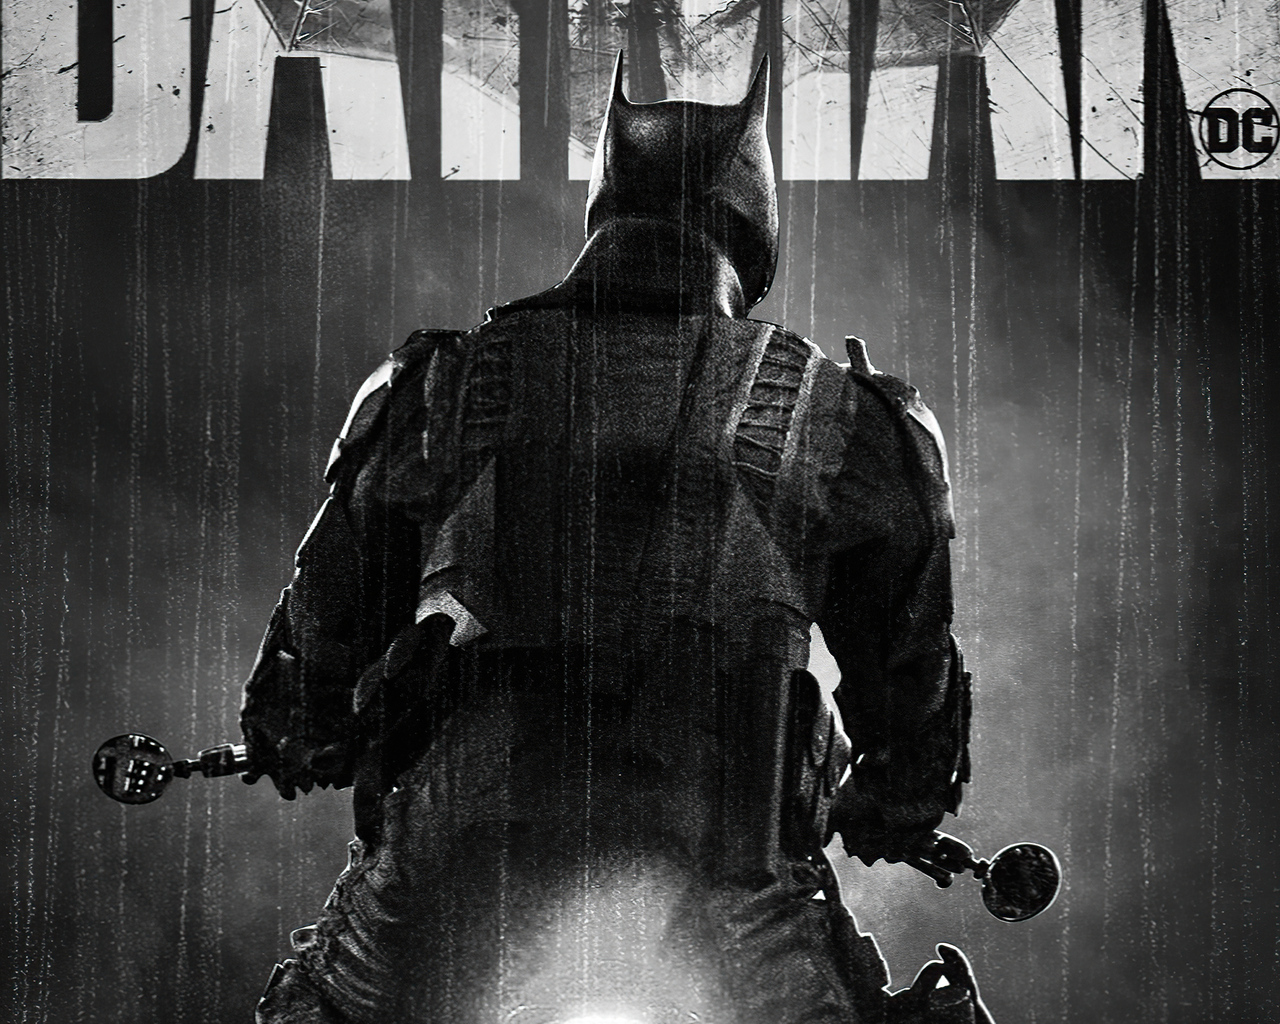 the-batman-dc-monochrome-poster-4k-vw.jpg